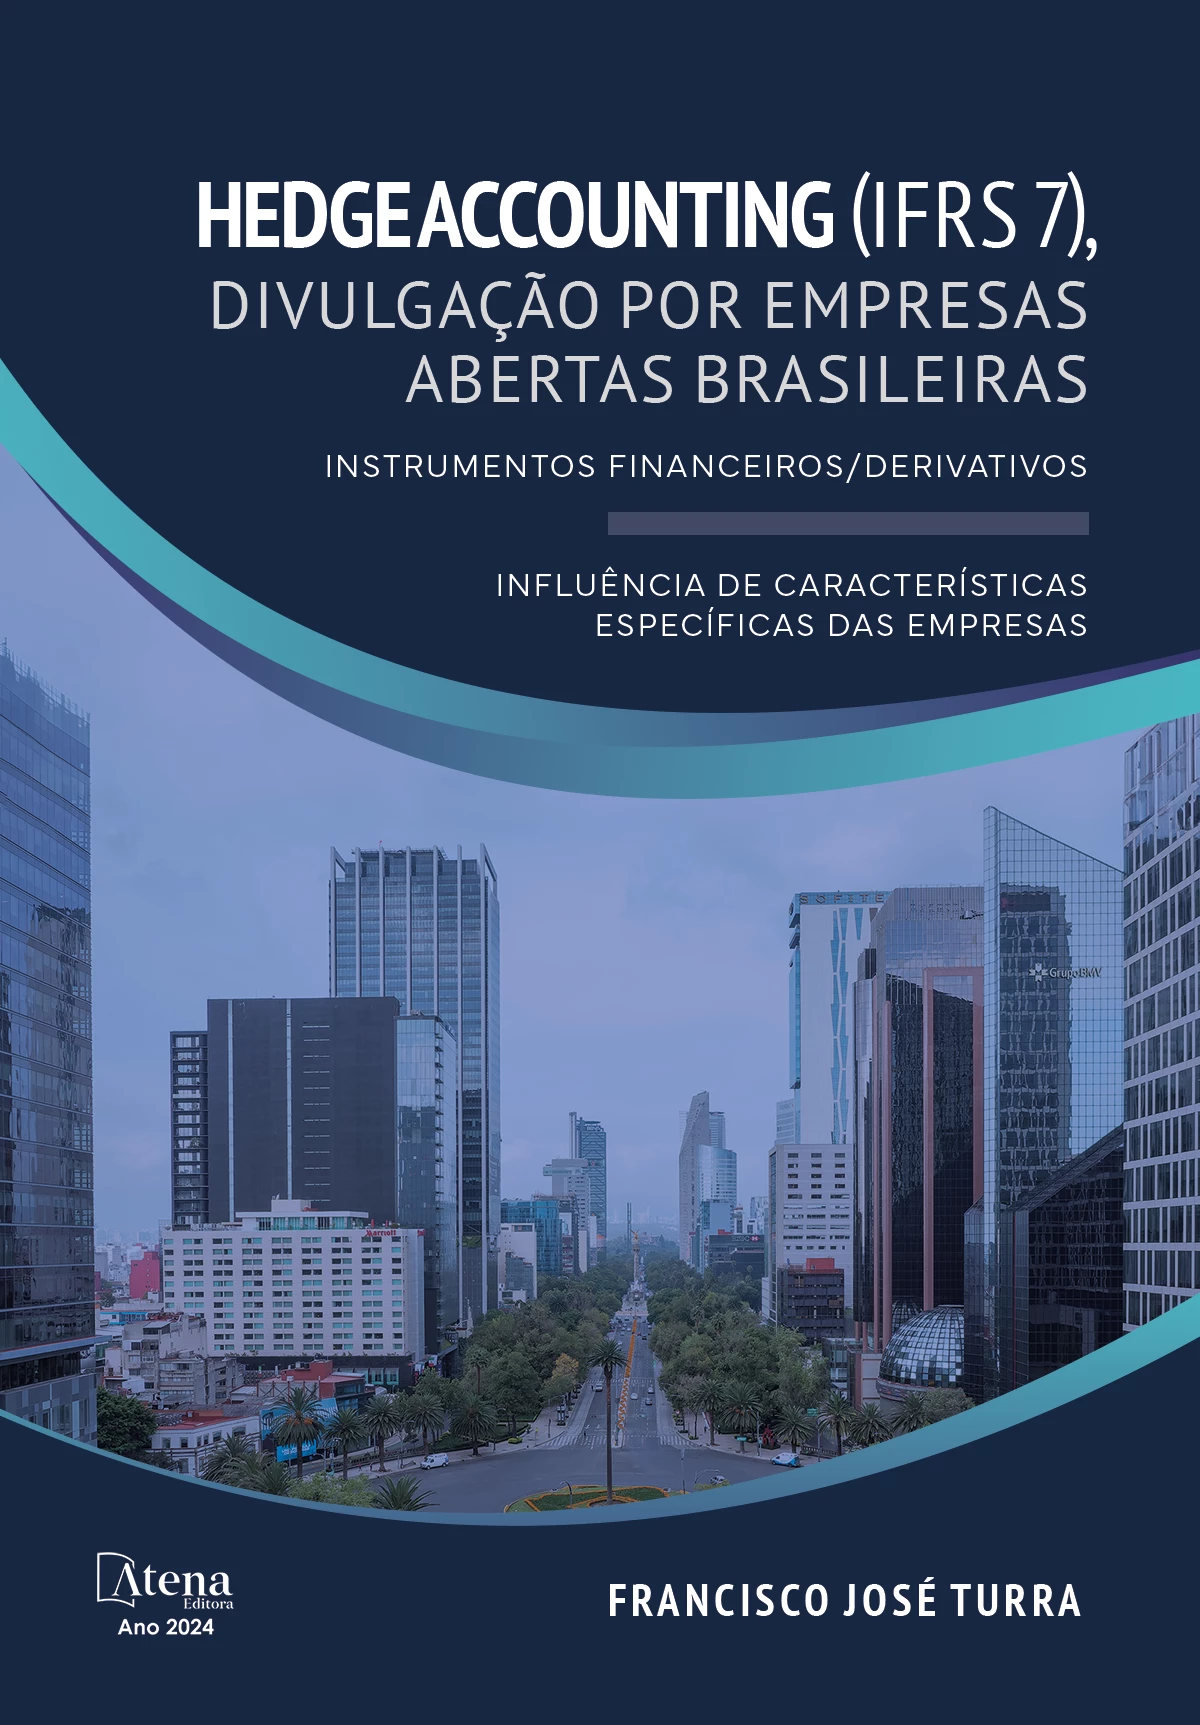 HEDGE ACCOUNTING (IFRS 7), divulgação por empresas abertas brasileiras - Instrumentos financeiros/derivados - Influência de características específicas das empresas